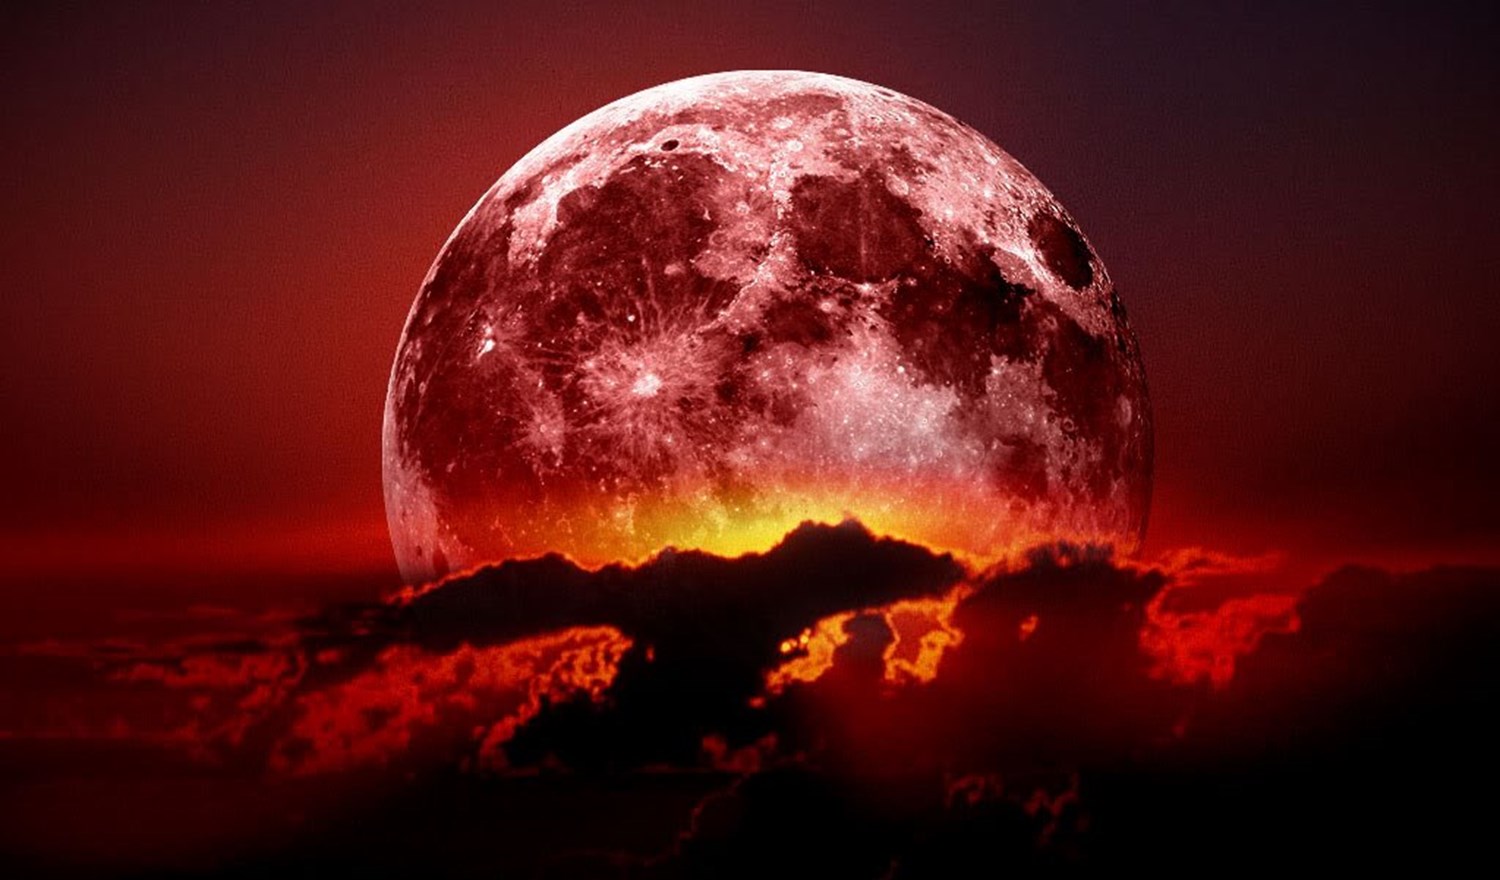 القمر الأحمر